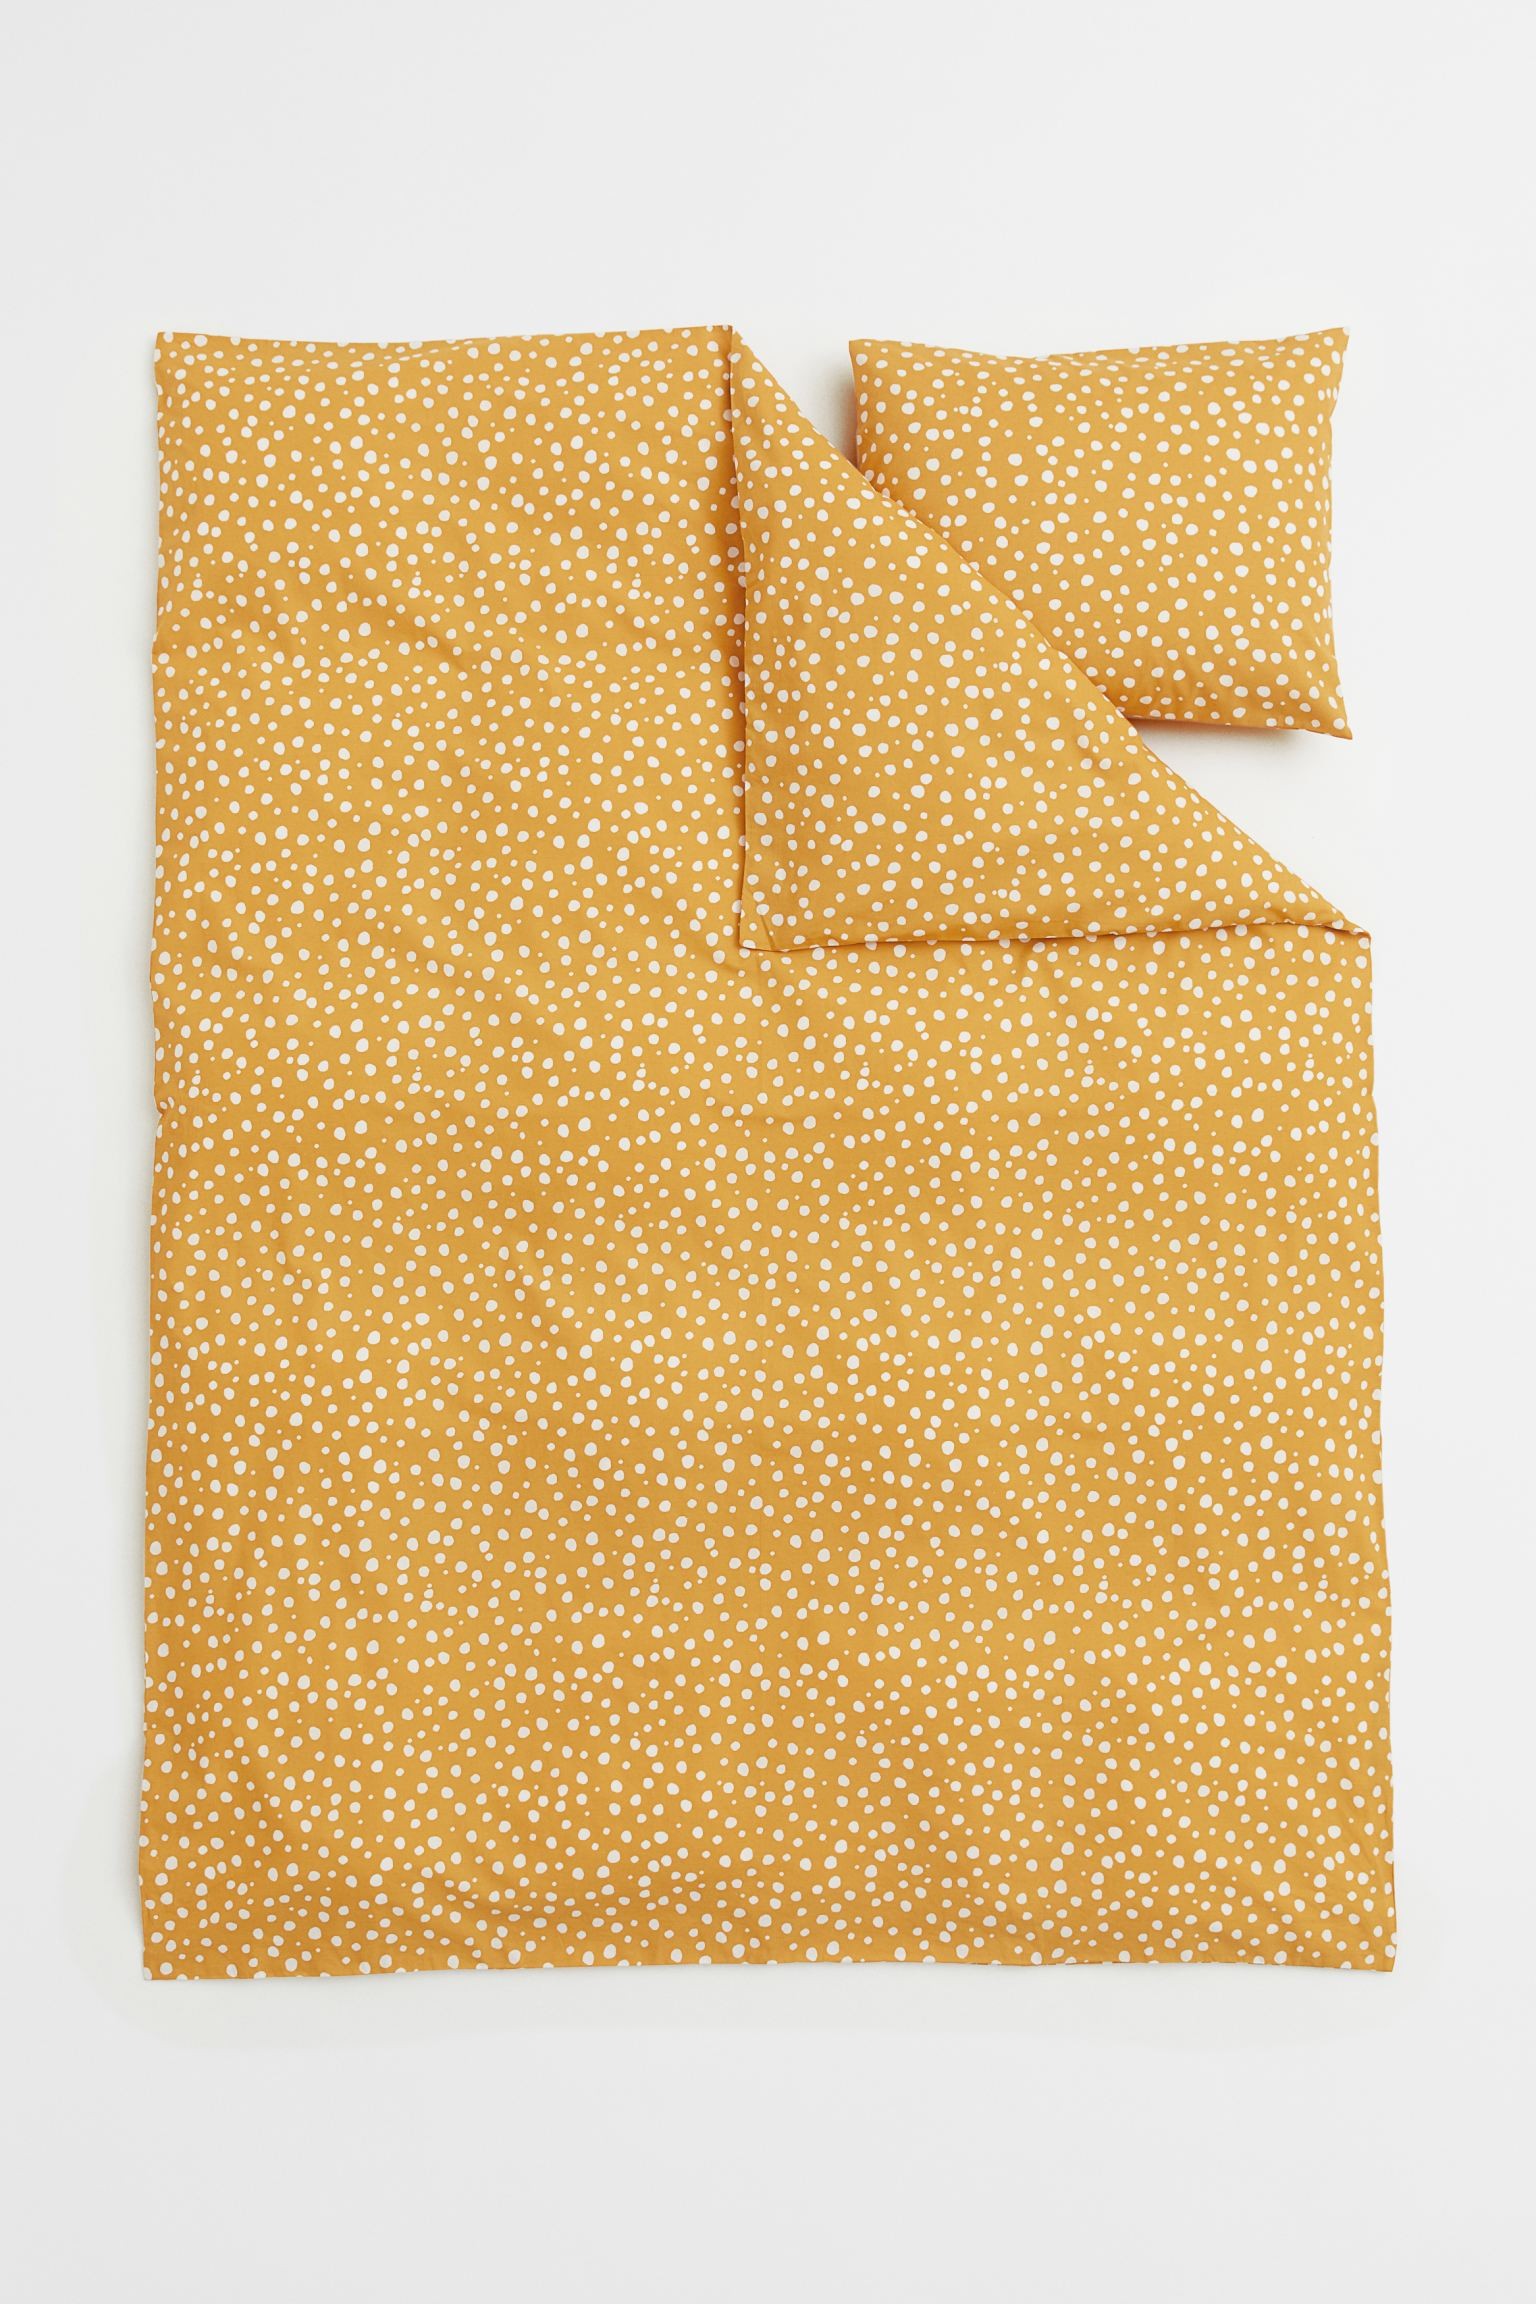 H&M Home Односпальное постельное белье в узоры, Желтый/Точки, Разные размеры 0877621003 0877621003